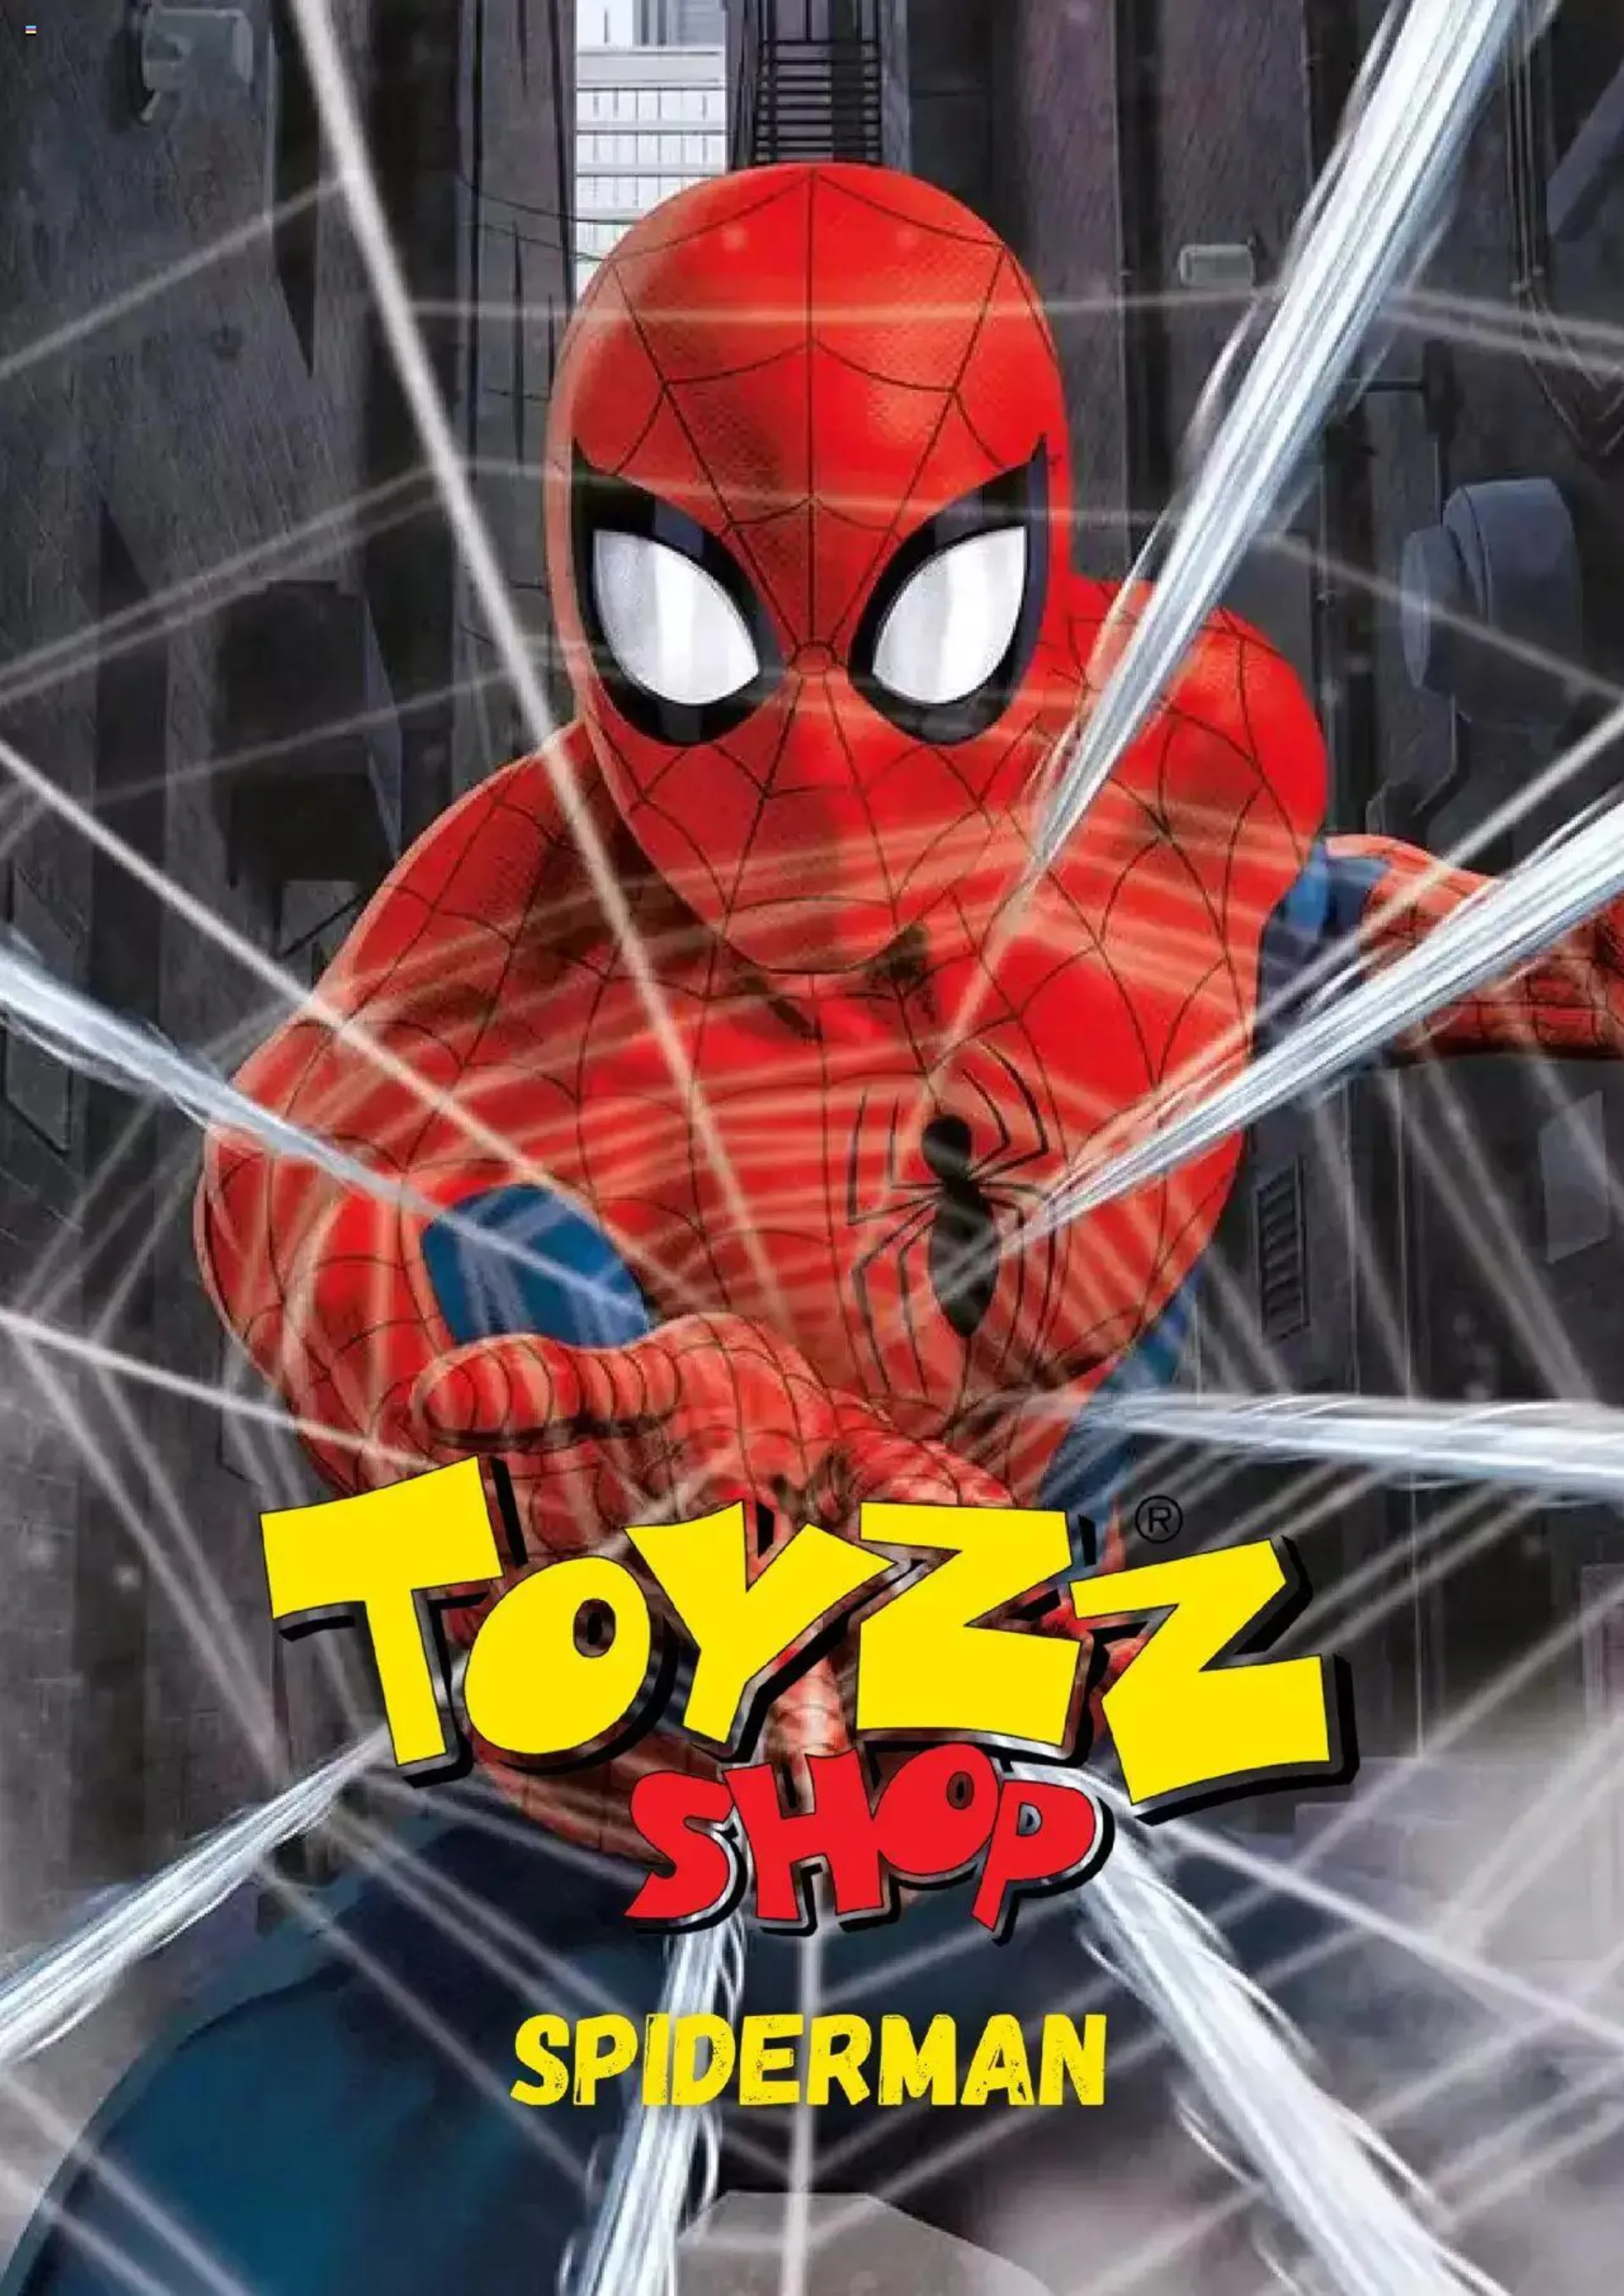 Toyzz Shop Katalog Spiderman - 0